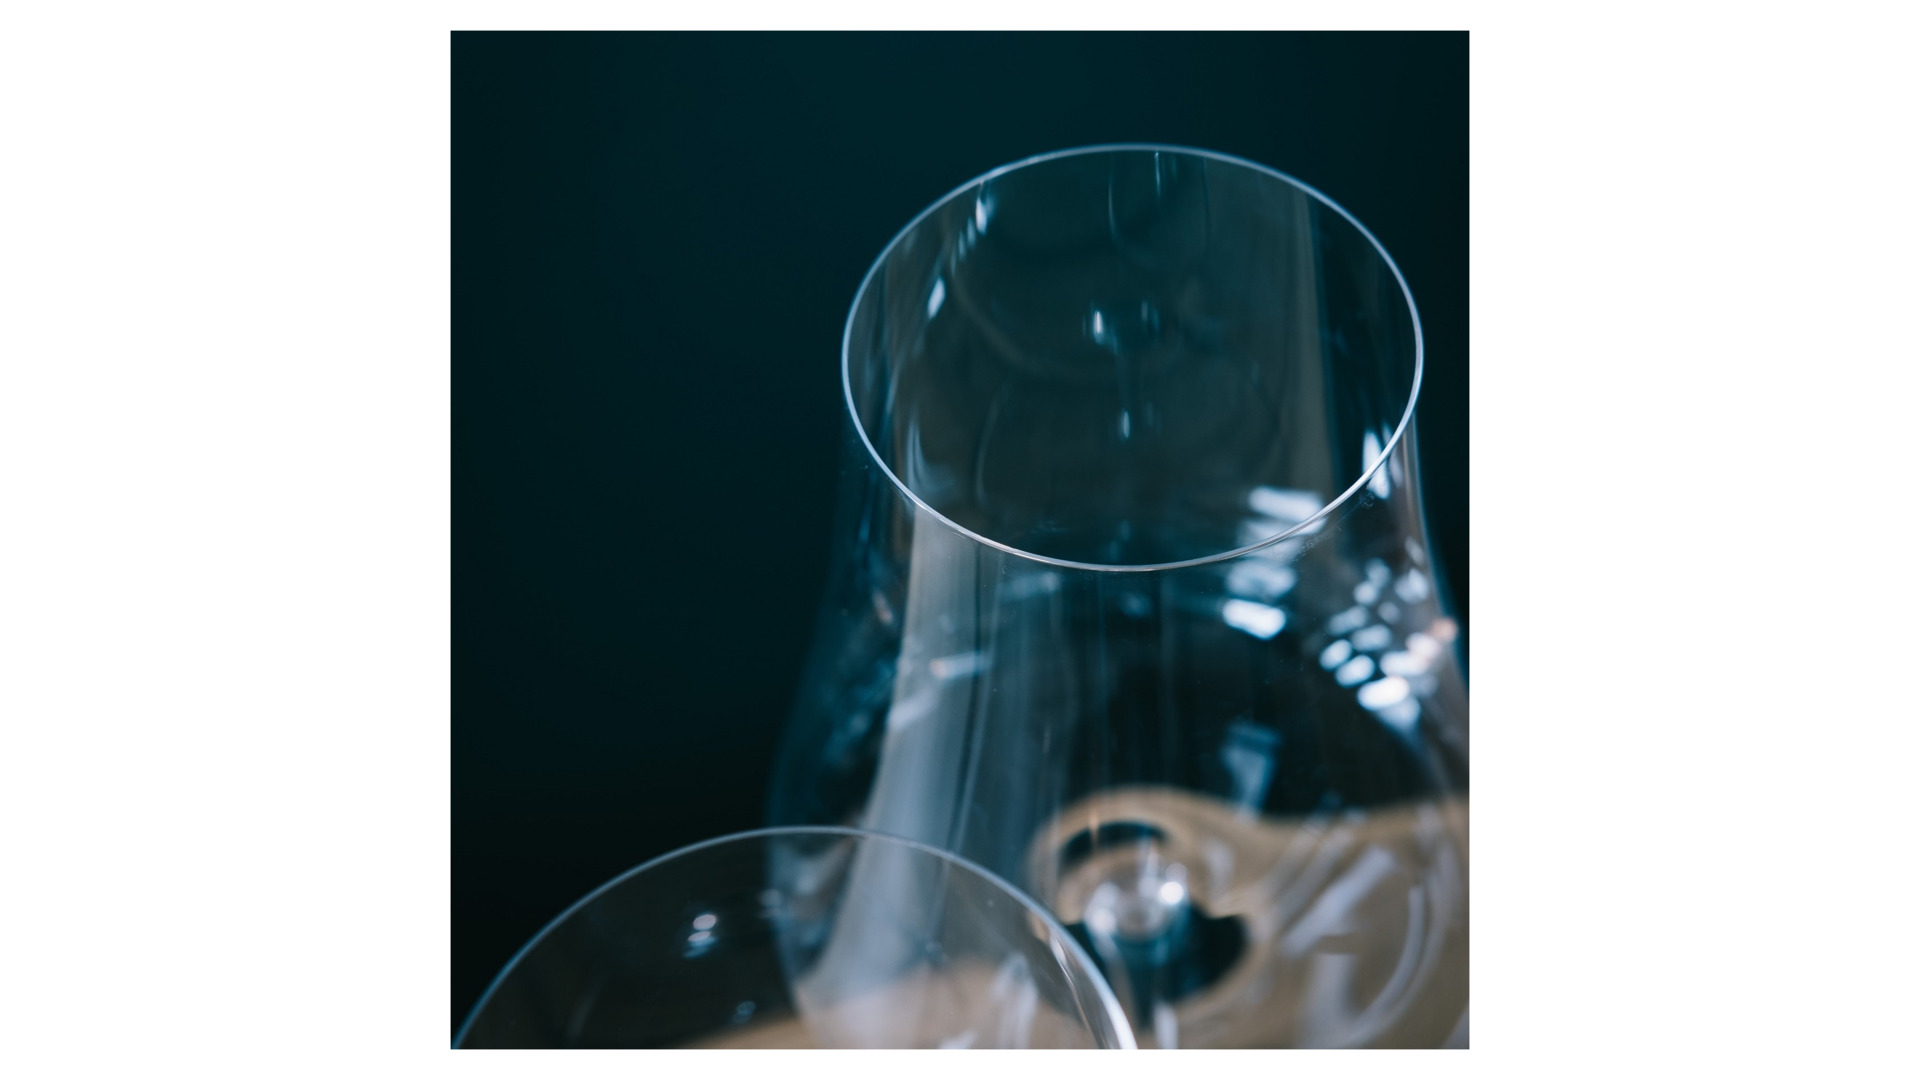 Бокал для белого вина Nude Glass Невидимая ножка Вулкан 700 мл, стекло хрустальное